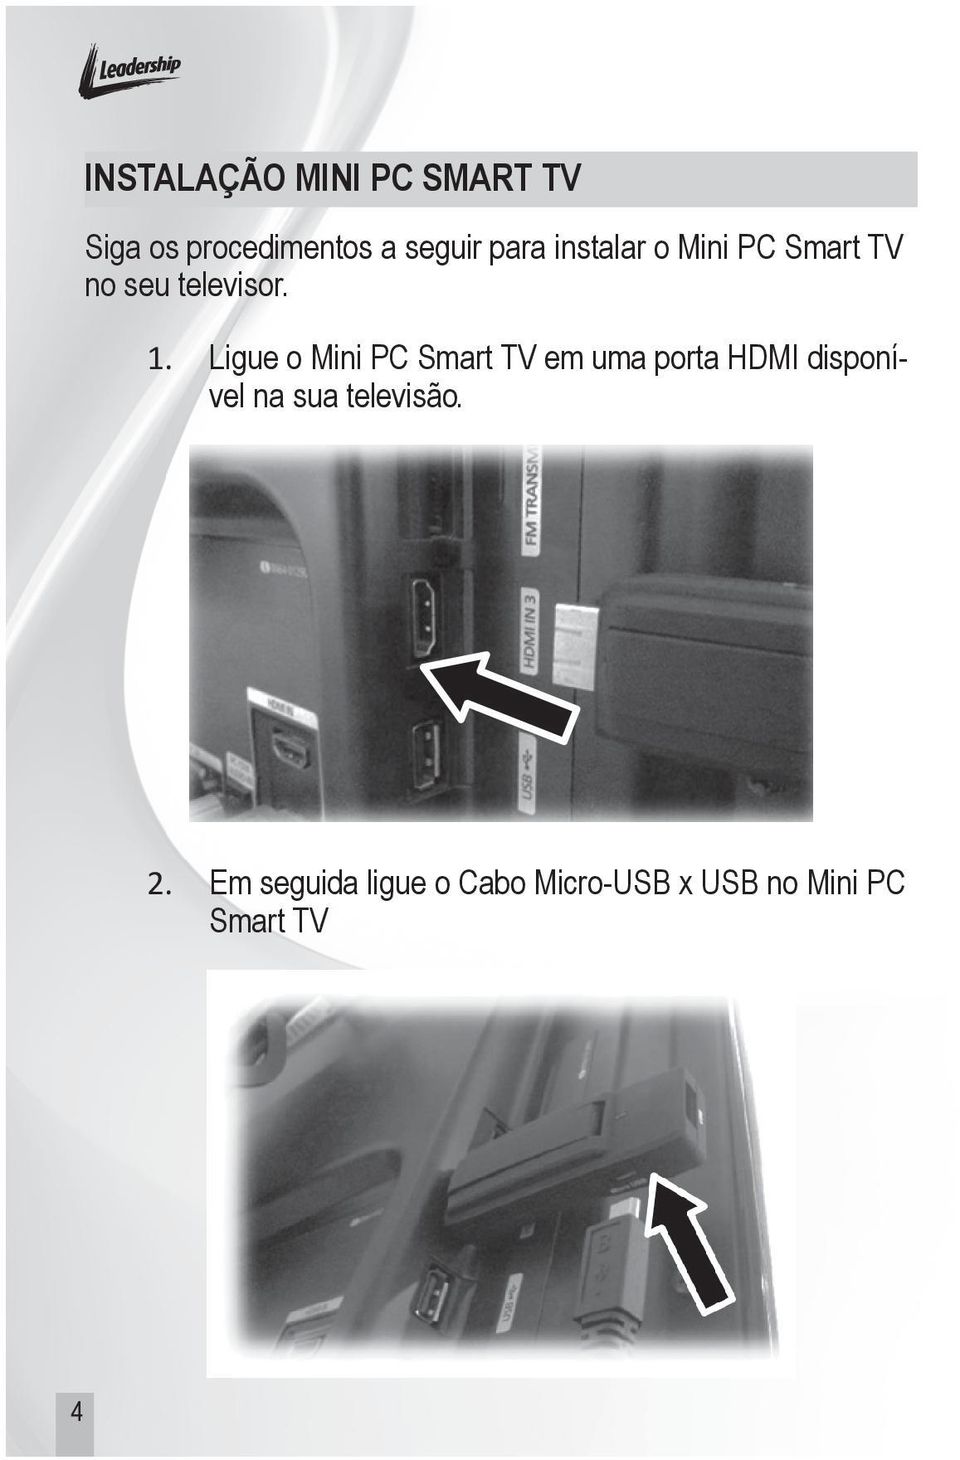 Ligue o Mini PC Smart TV em uma porta HDMI disponível na sua